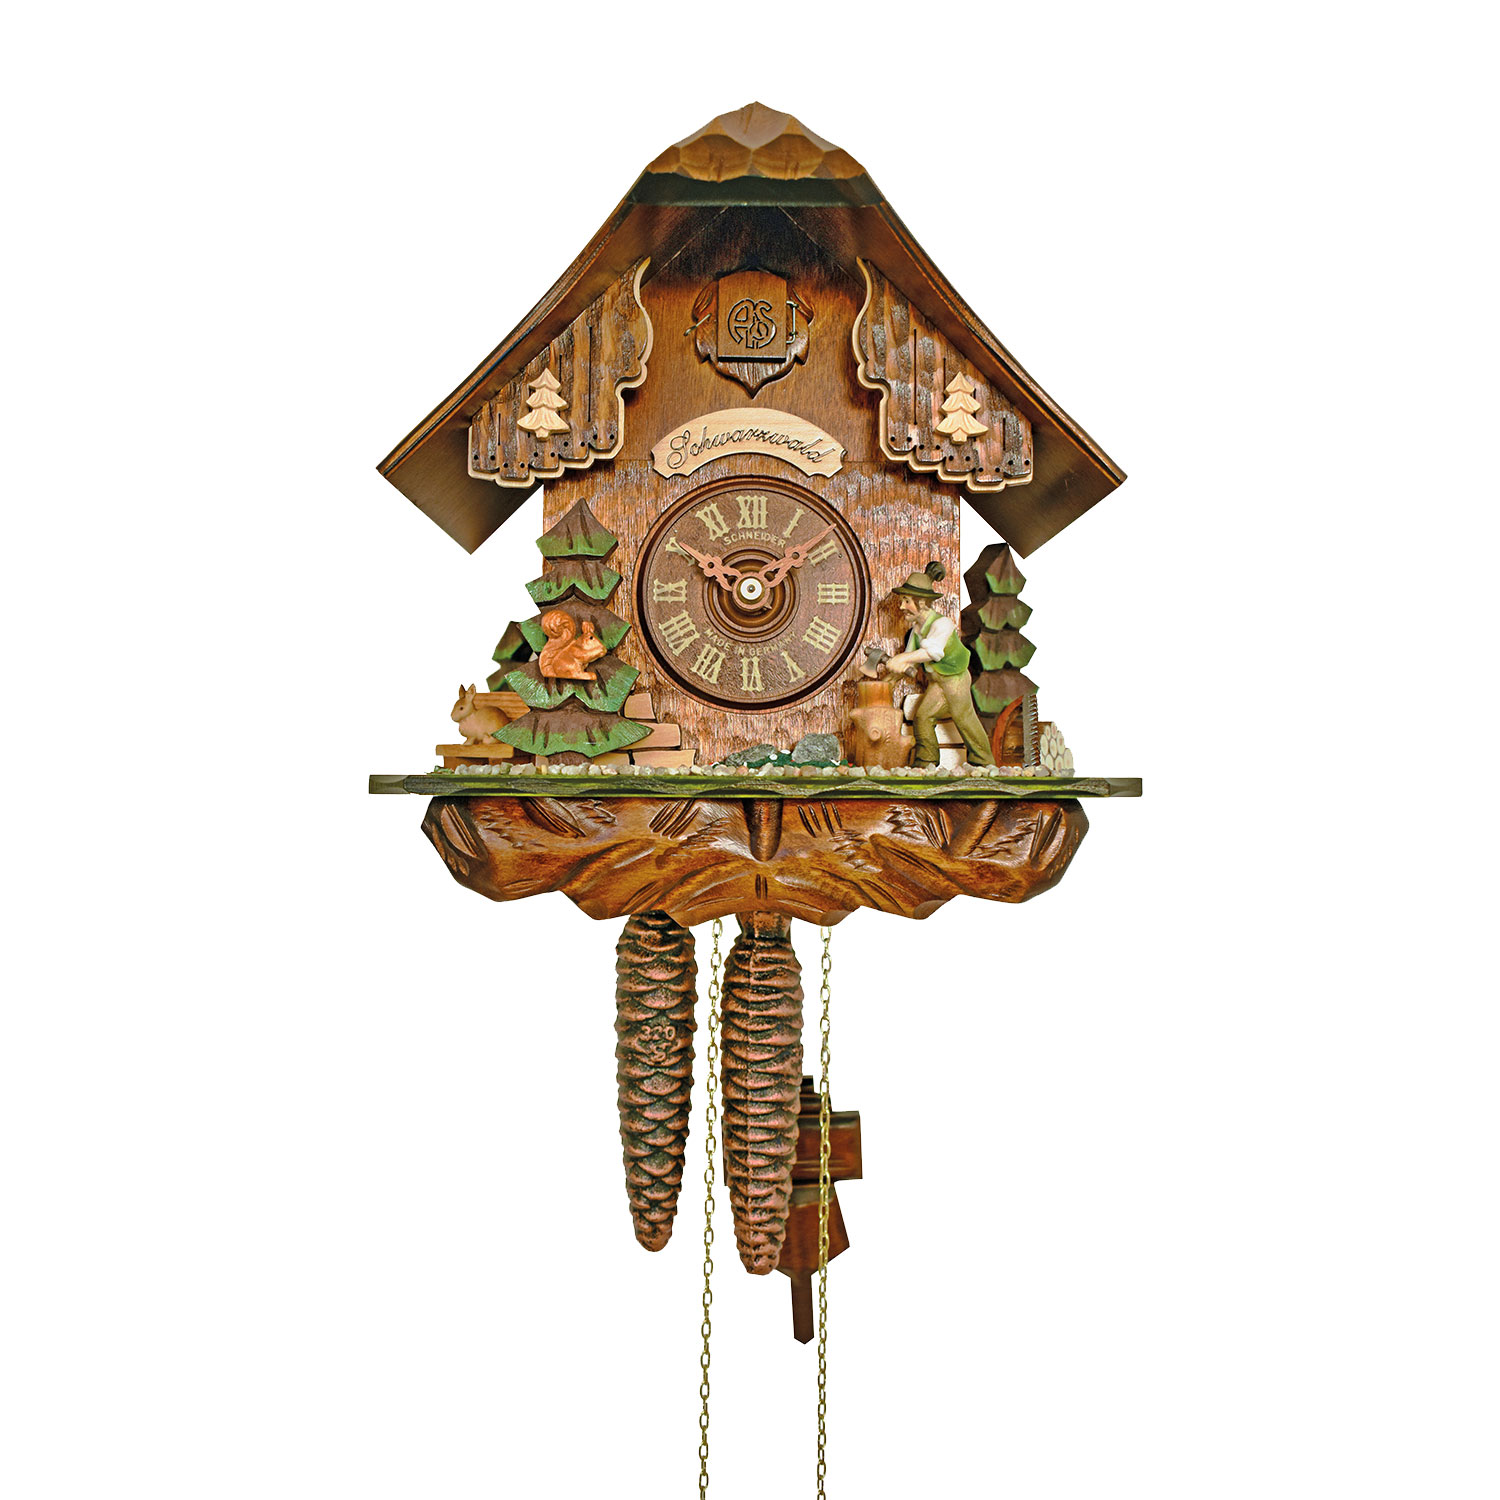 Home of the original Black Forest Cuckoo Clock - Anton Schneider 